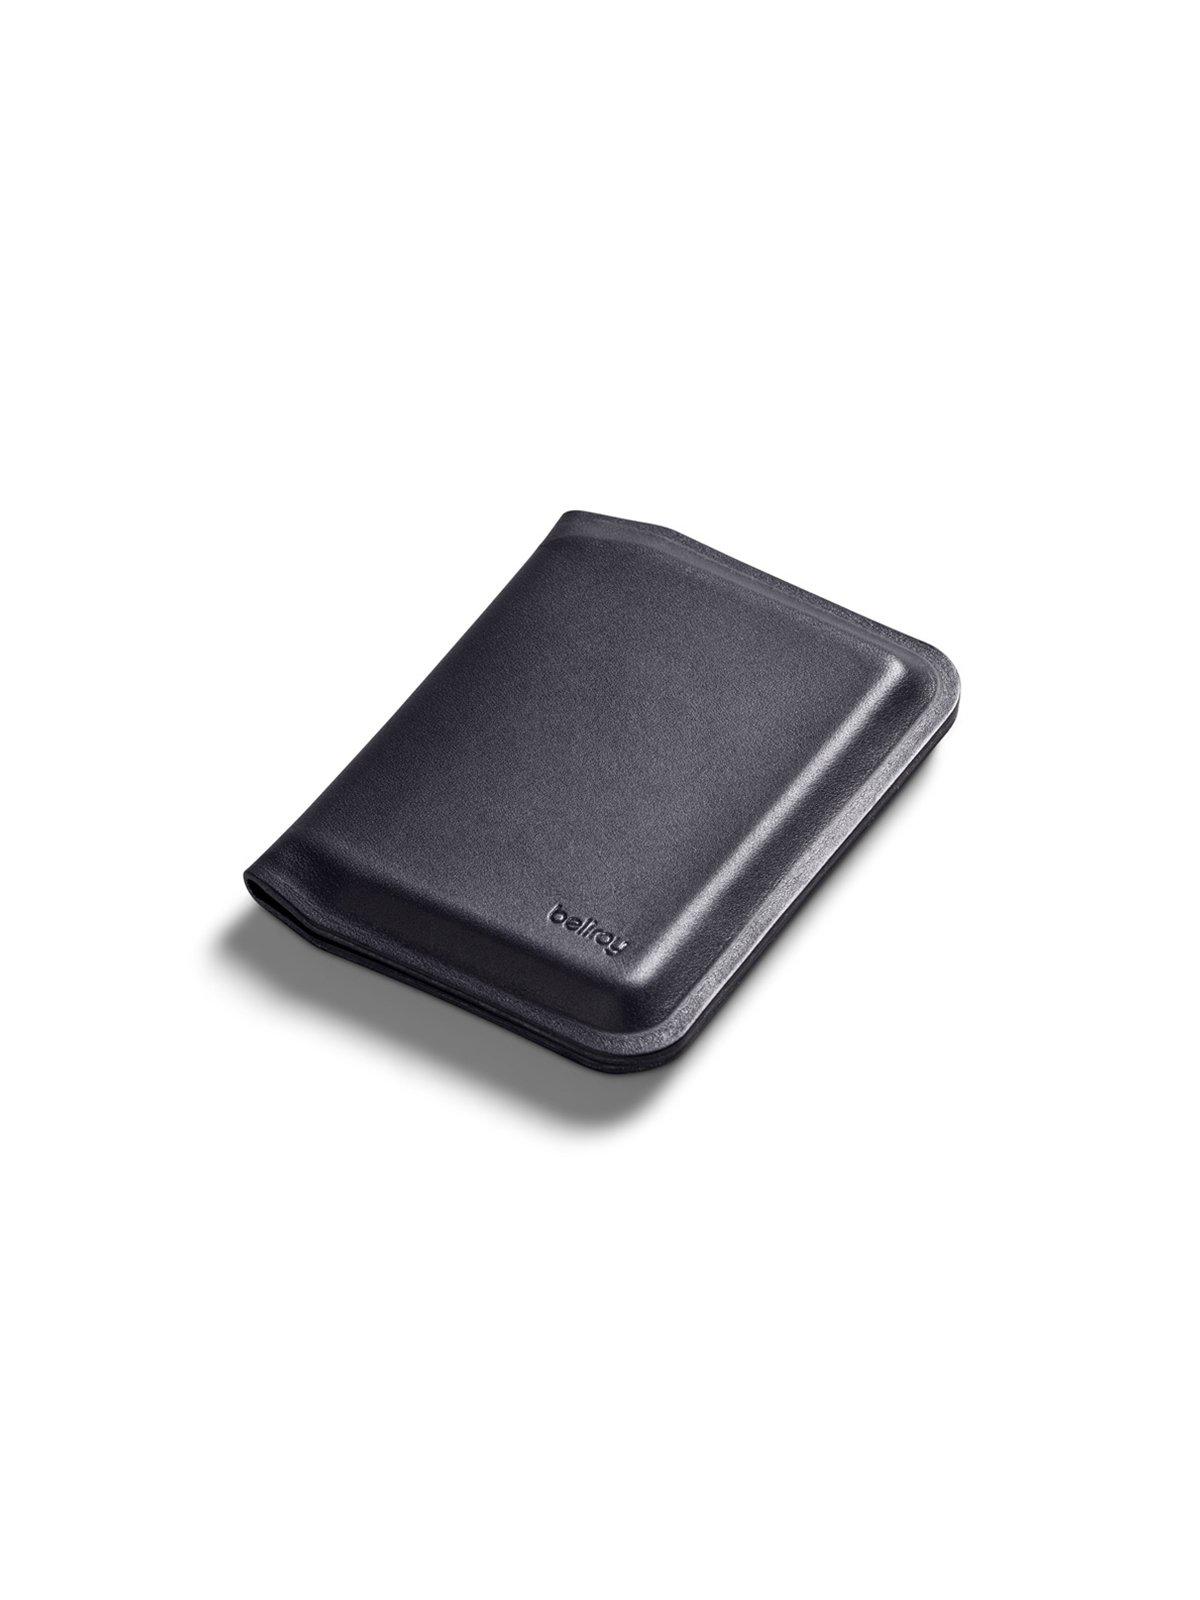 Bellroy APEX Slim Sleeve Wallet Onyx RFID